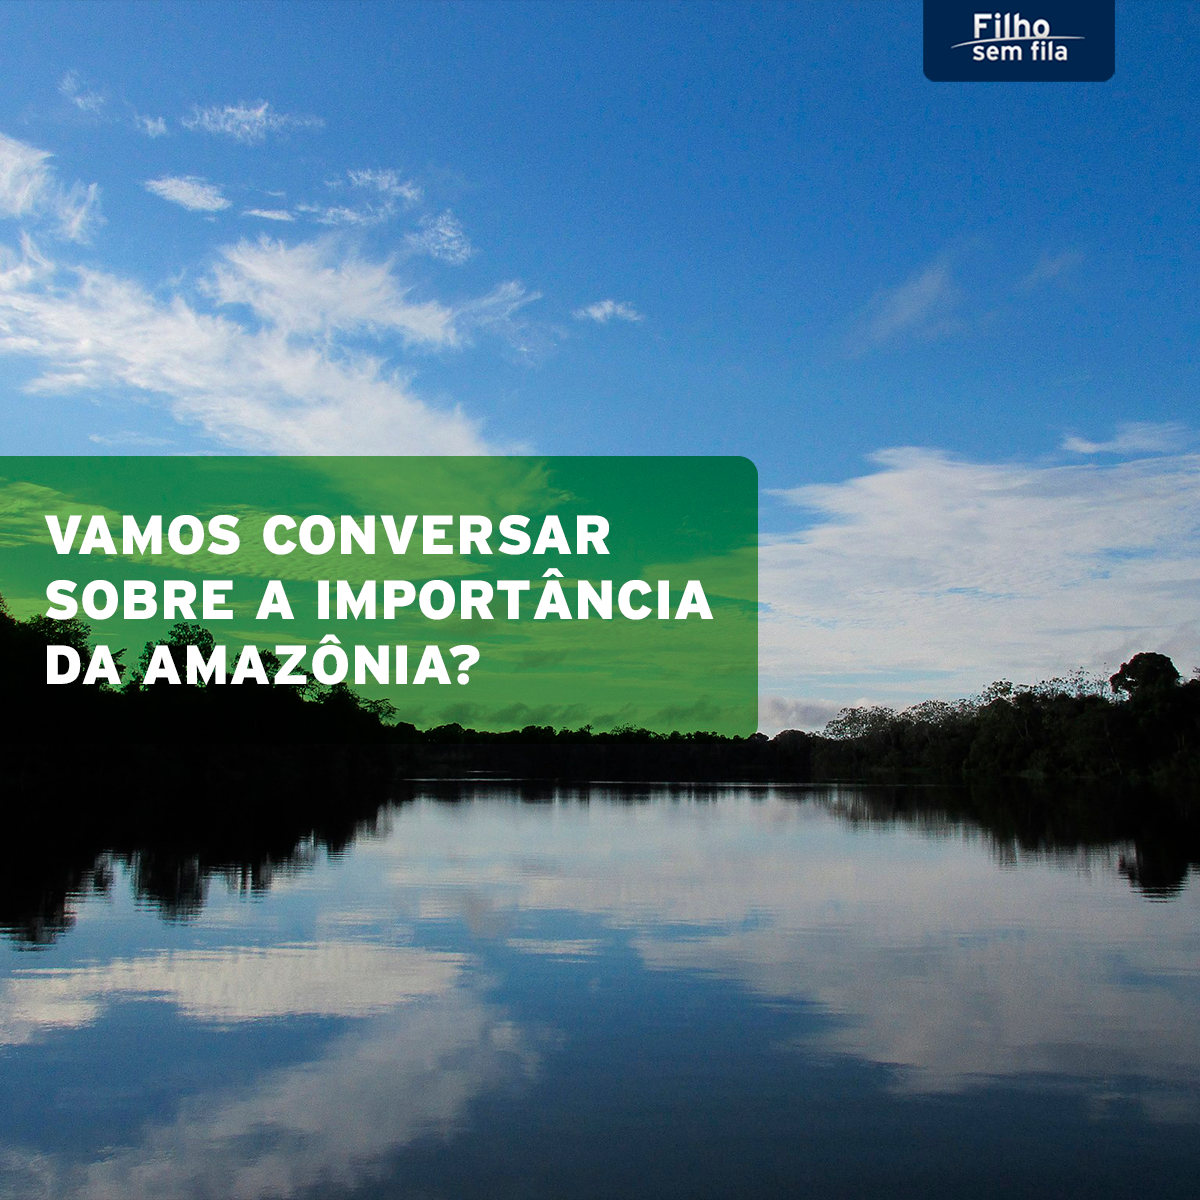 Vamos conversar sobre a importância da Amazônia?